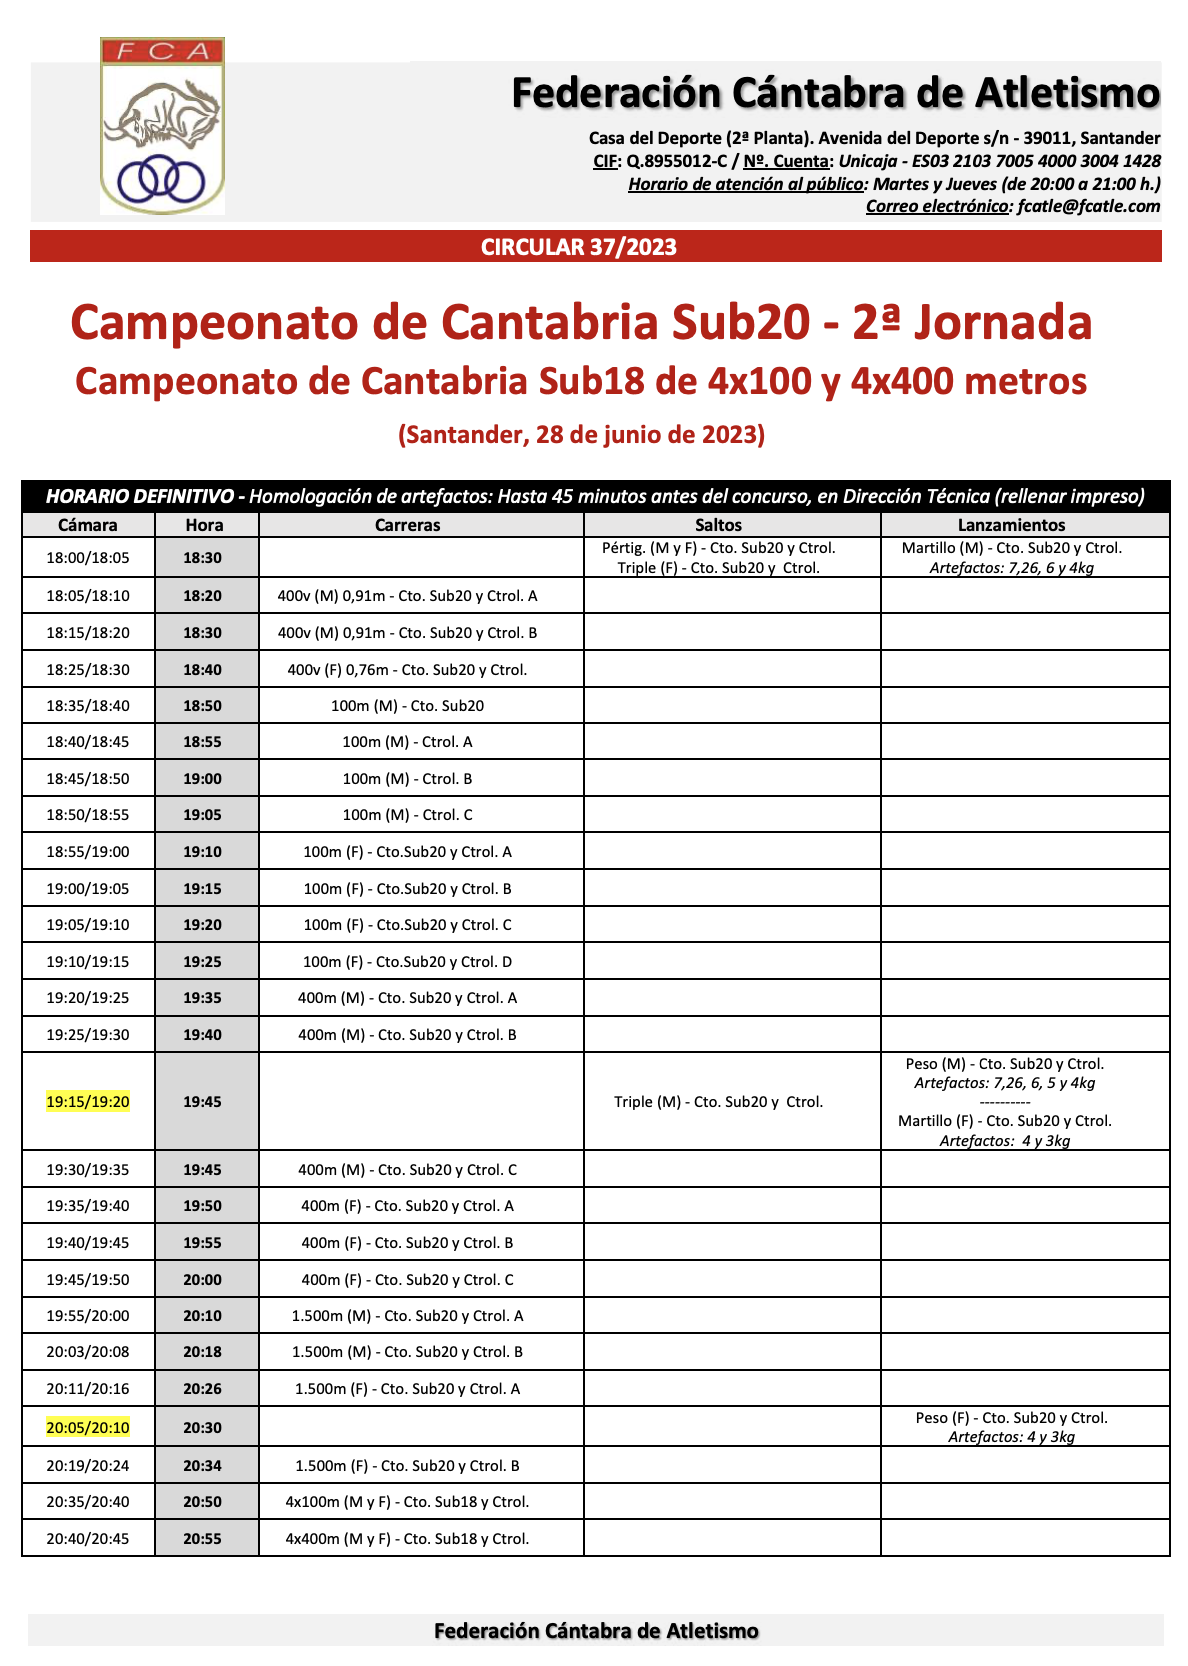 Campeonato de Cantabria Sub20 - 2ª Jornada / Campeonato de Cantabria Sub18 de 4x100 y 4x400 metros @ Santander, Cantabria